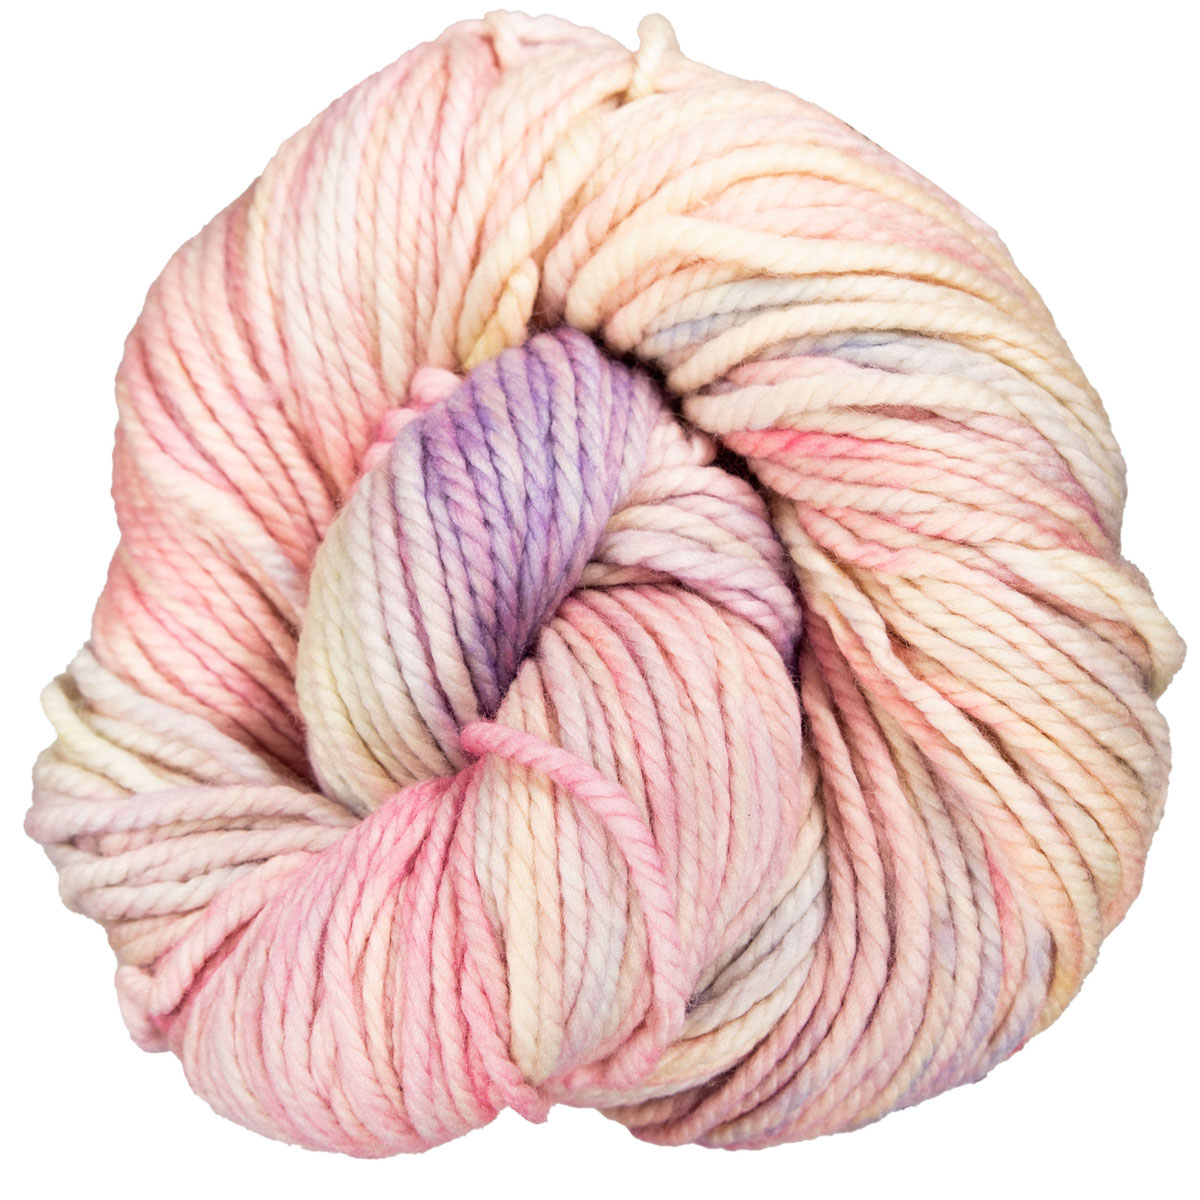  LOMAIRE Chunky Yarn Blanket Crochet Kit – 3.3LB/900